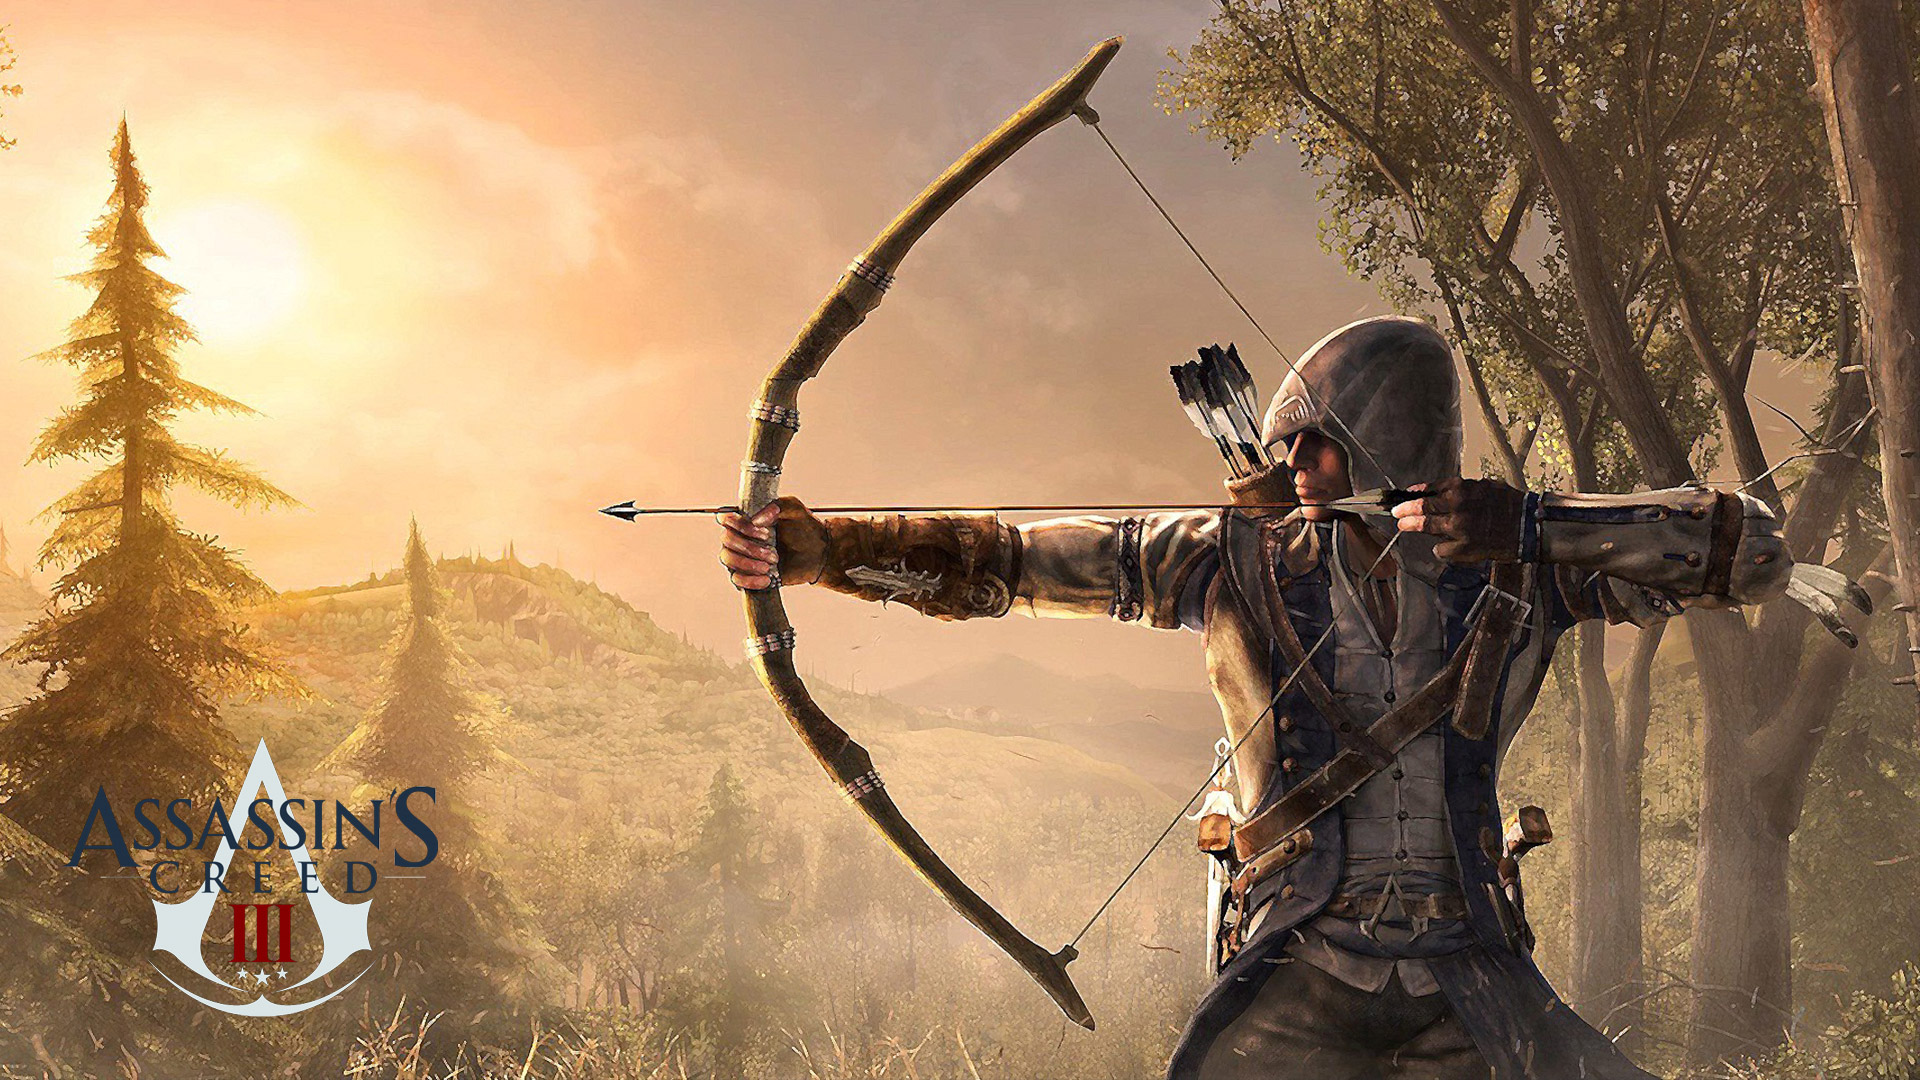 Assassins Creed Wallpaper HD | PixelsTalk.Net